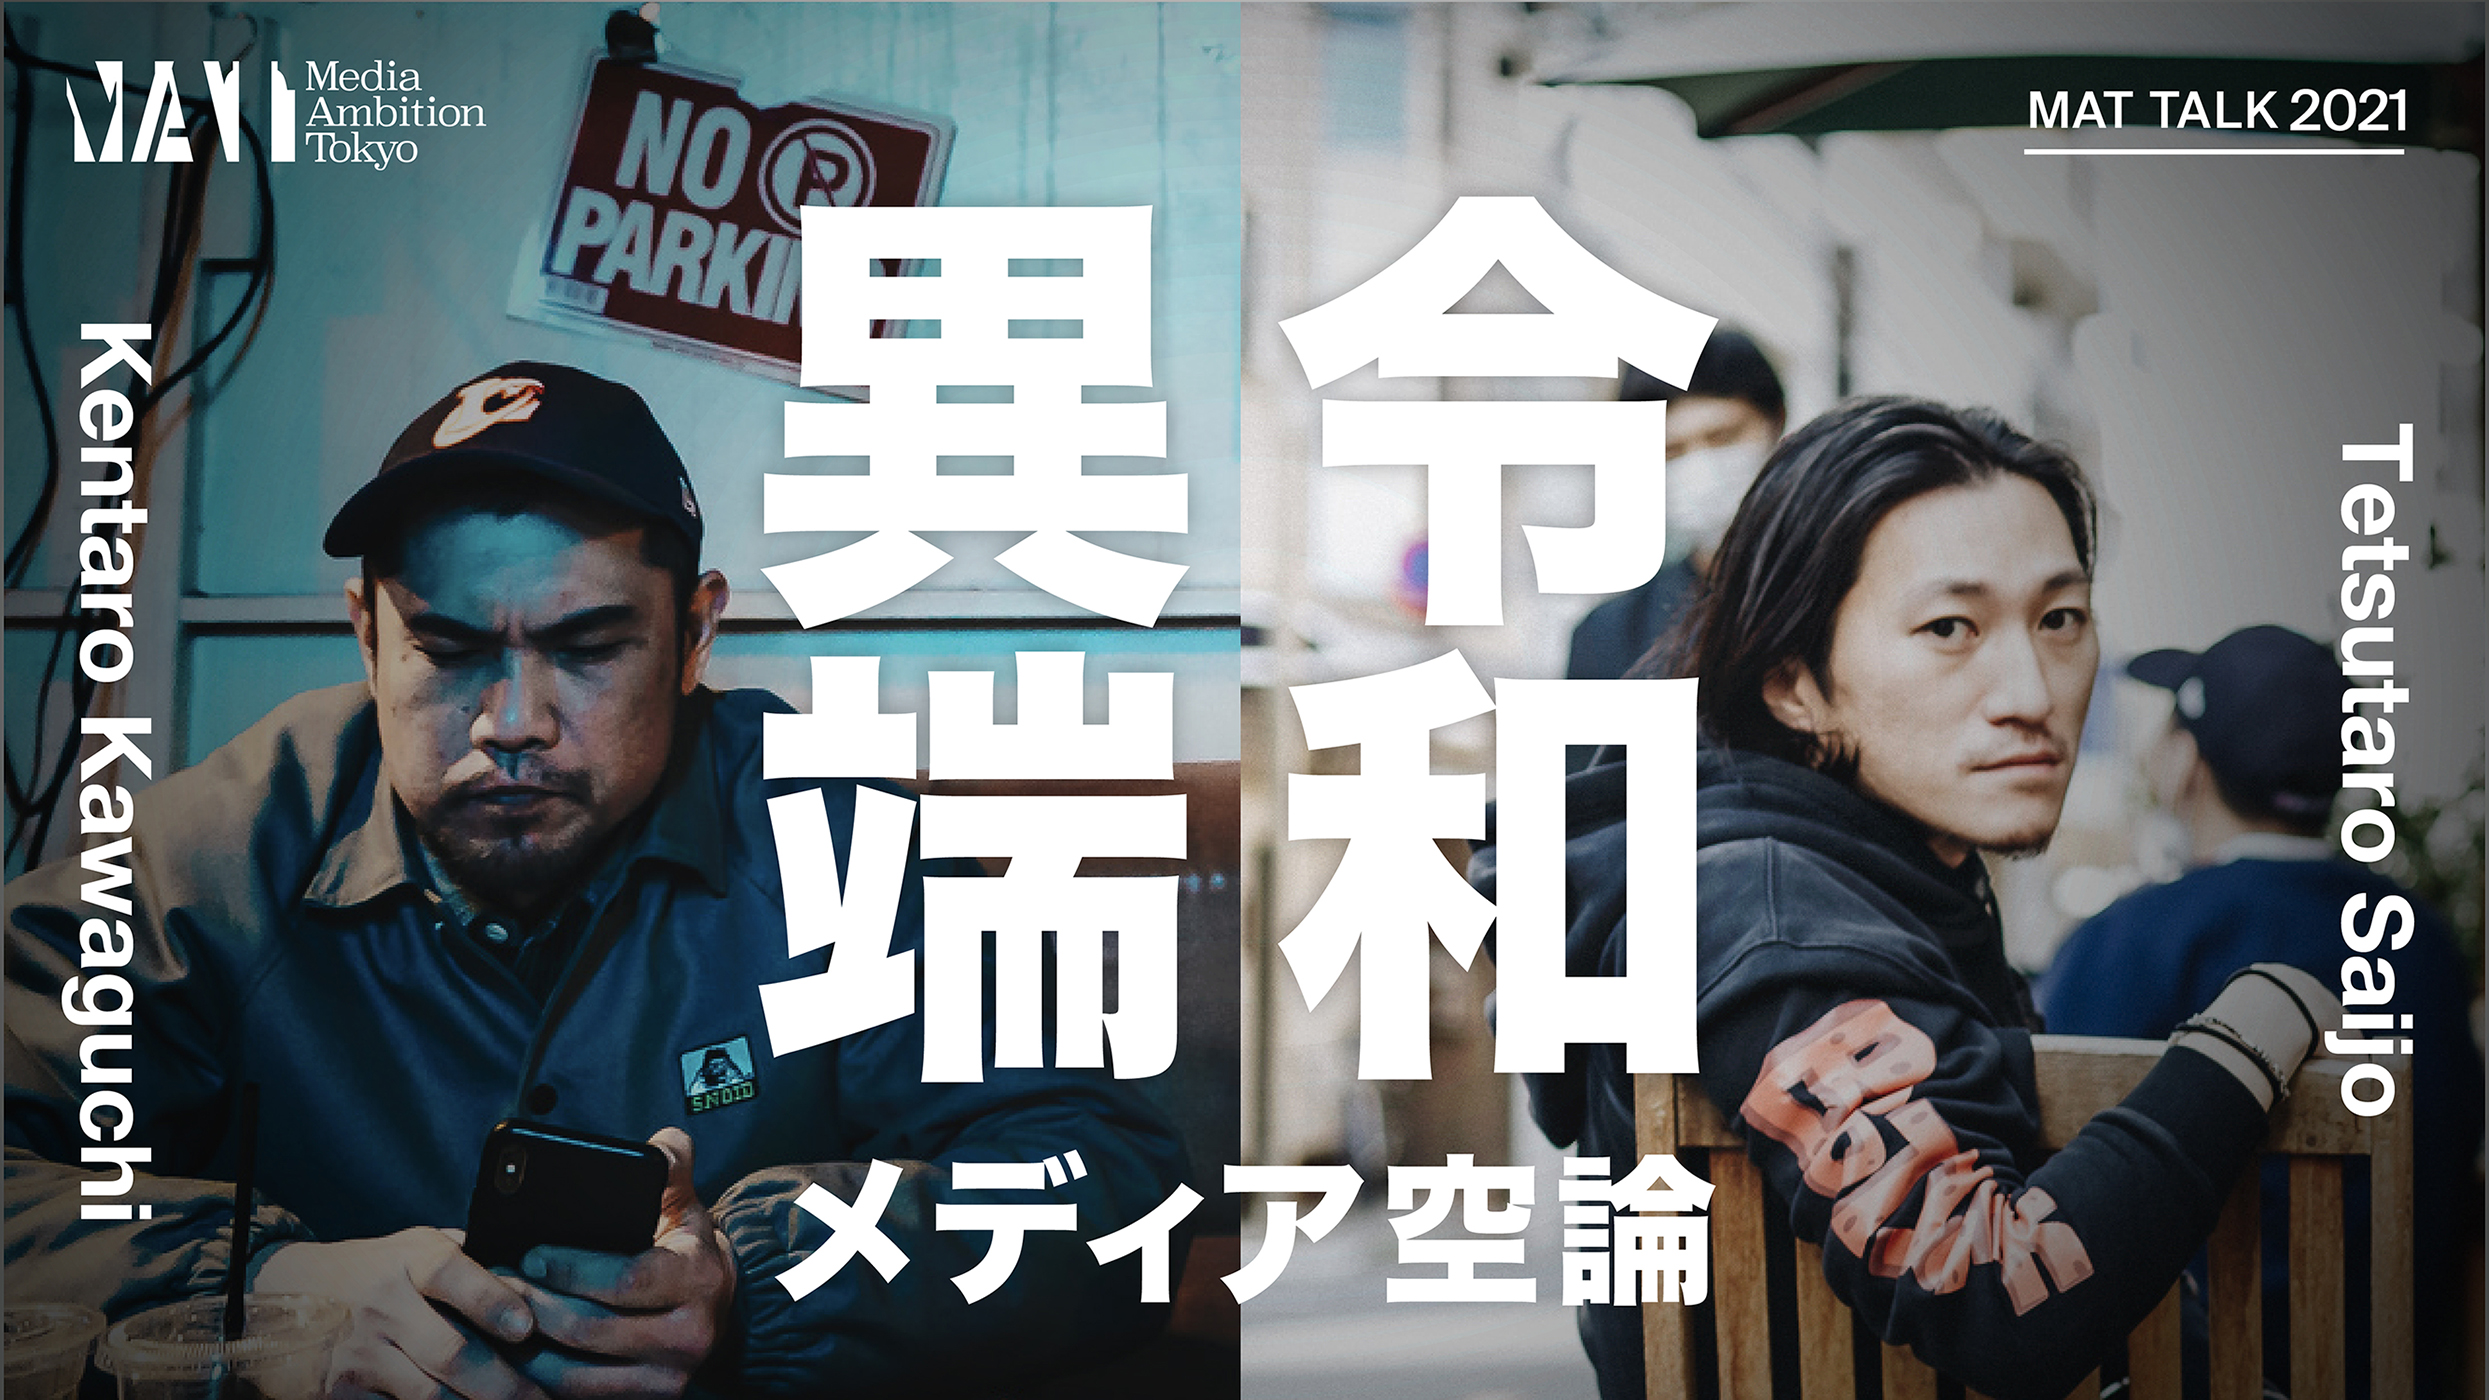 「令和異端メディア空論」 | Media Ambition Tokyo 2021